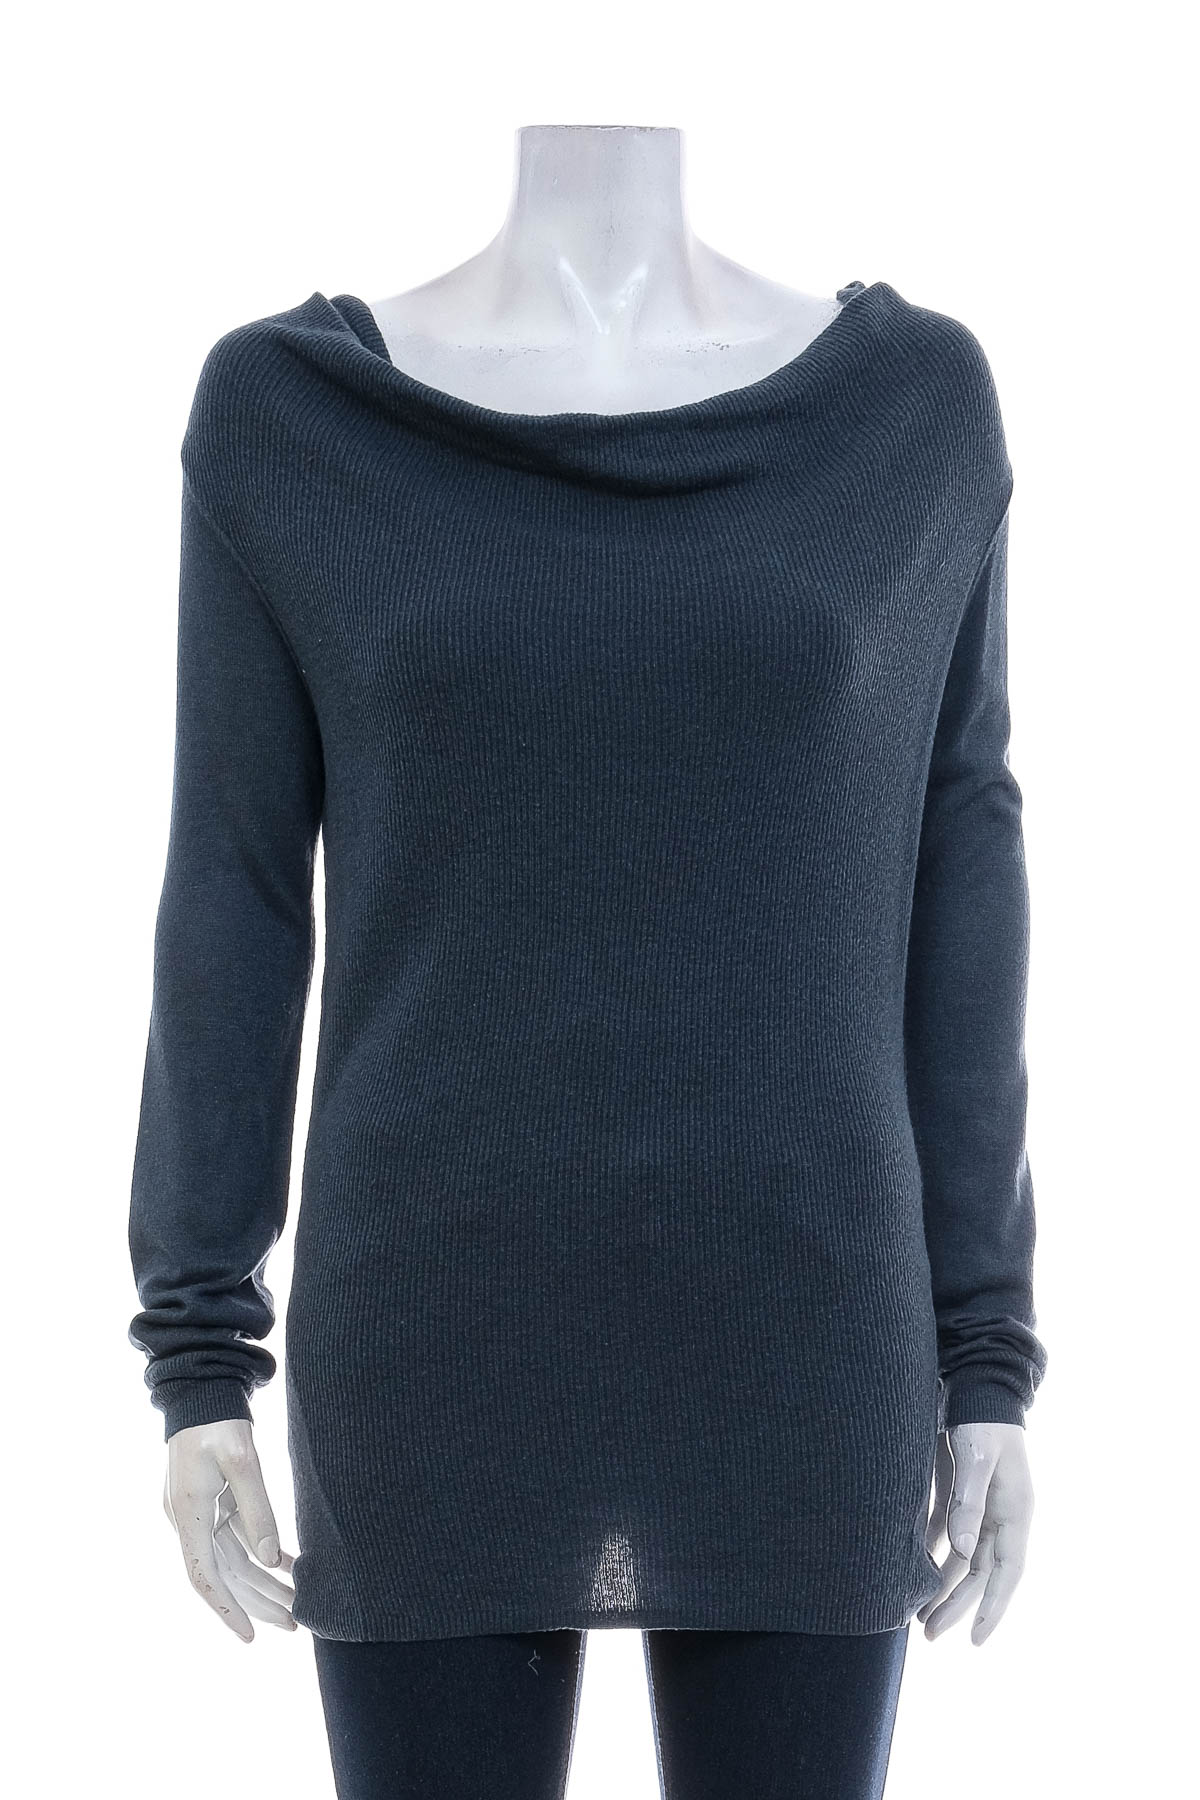 Women's sweater - Massimo - 0